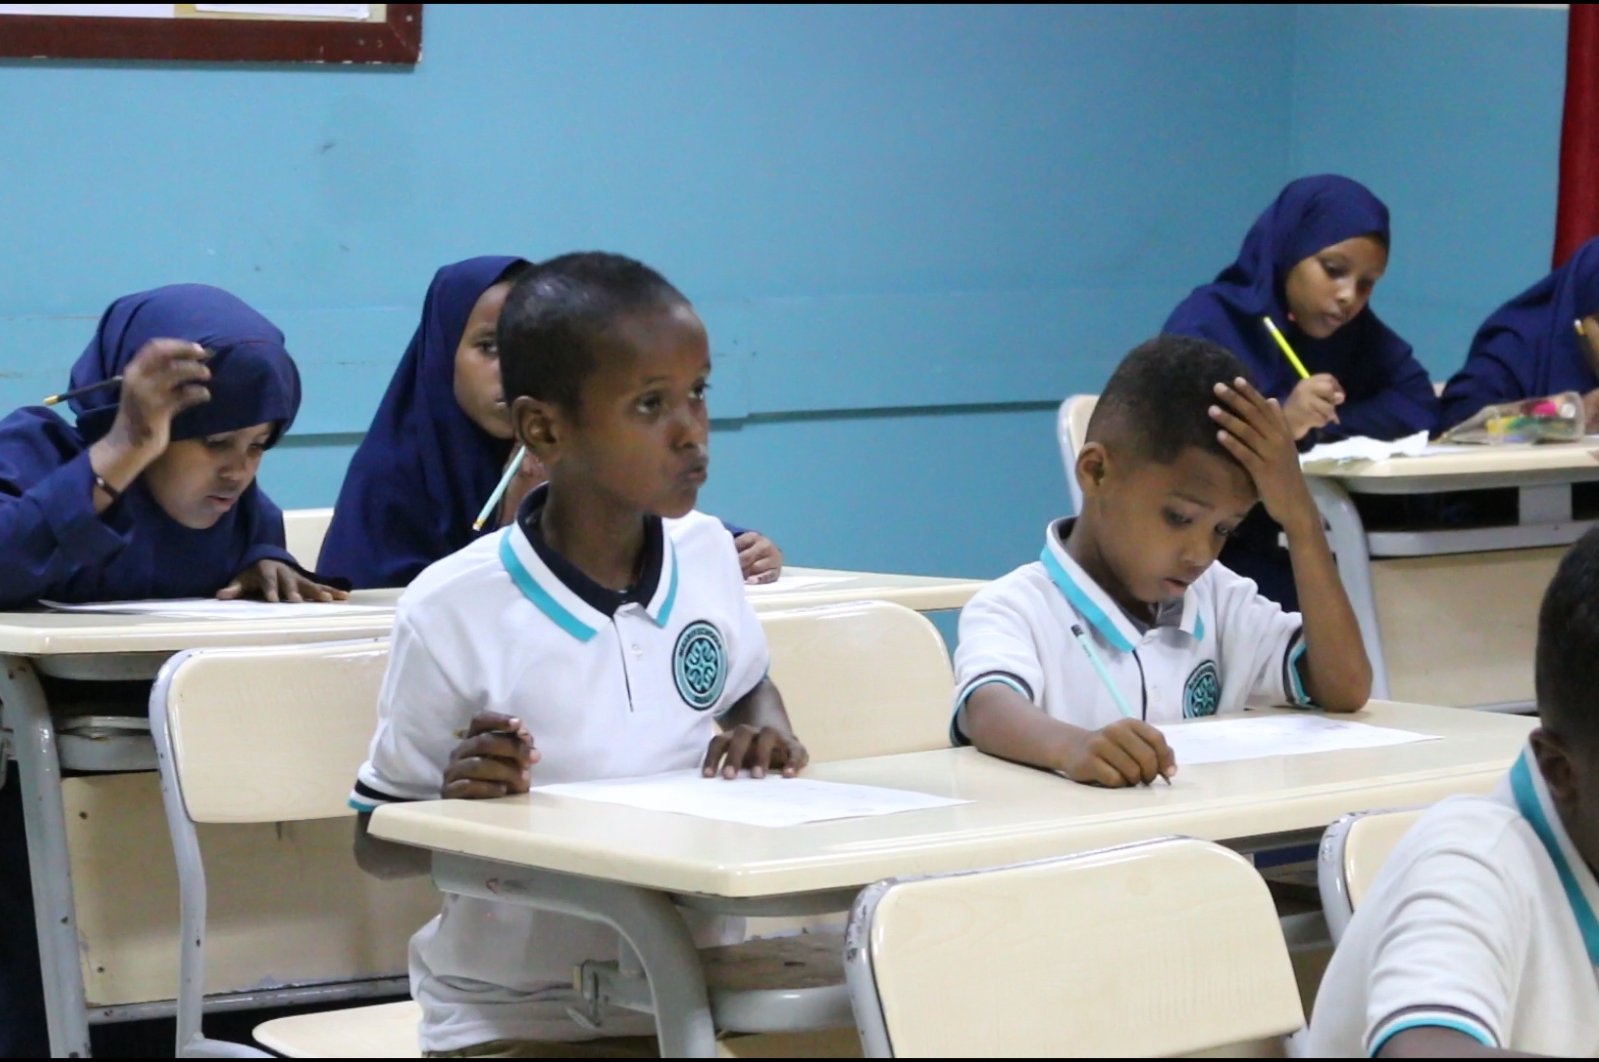 Sekolah Maarif Turki membawa harapan bagi anak-anak di Somalia